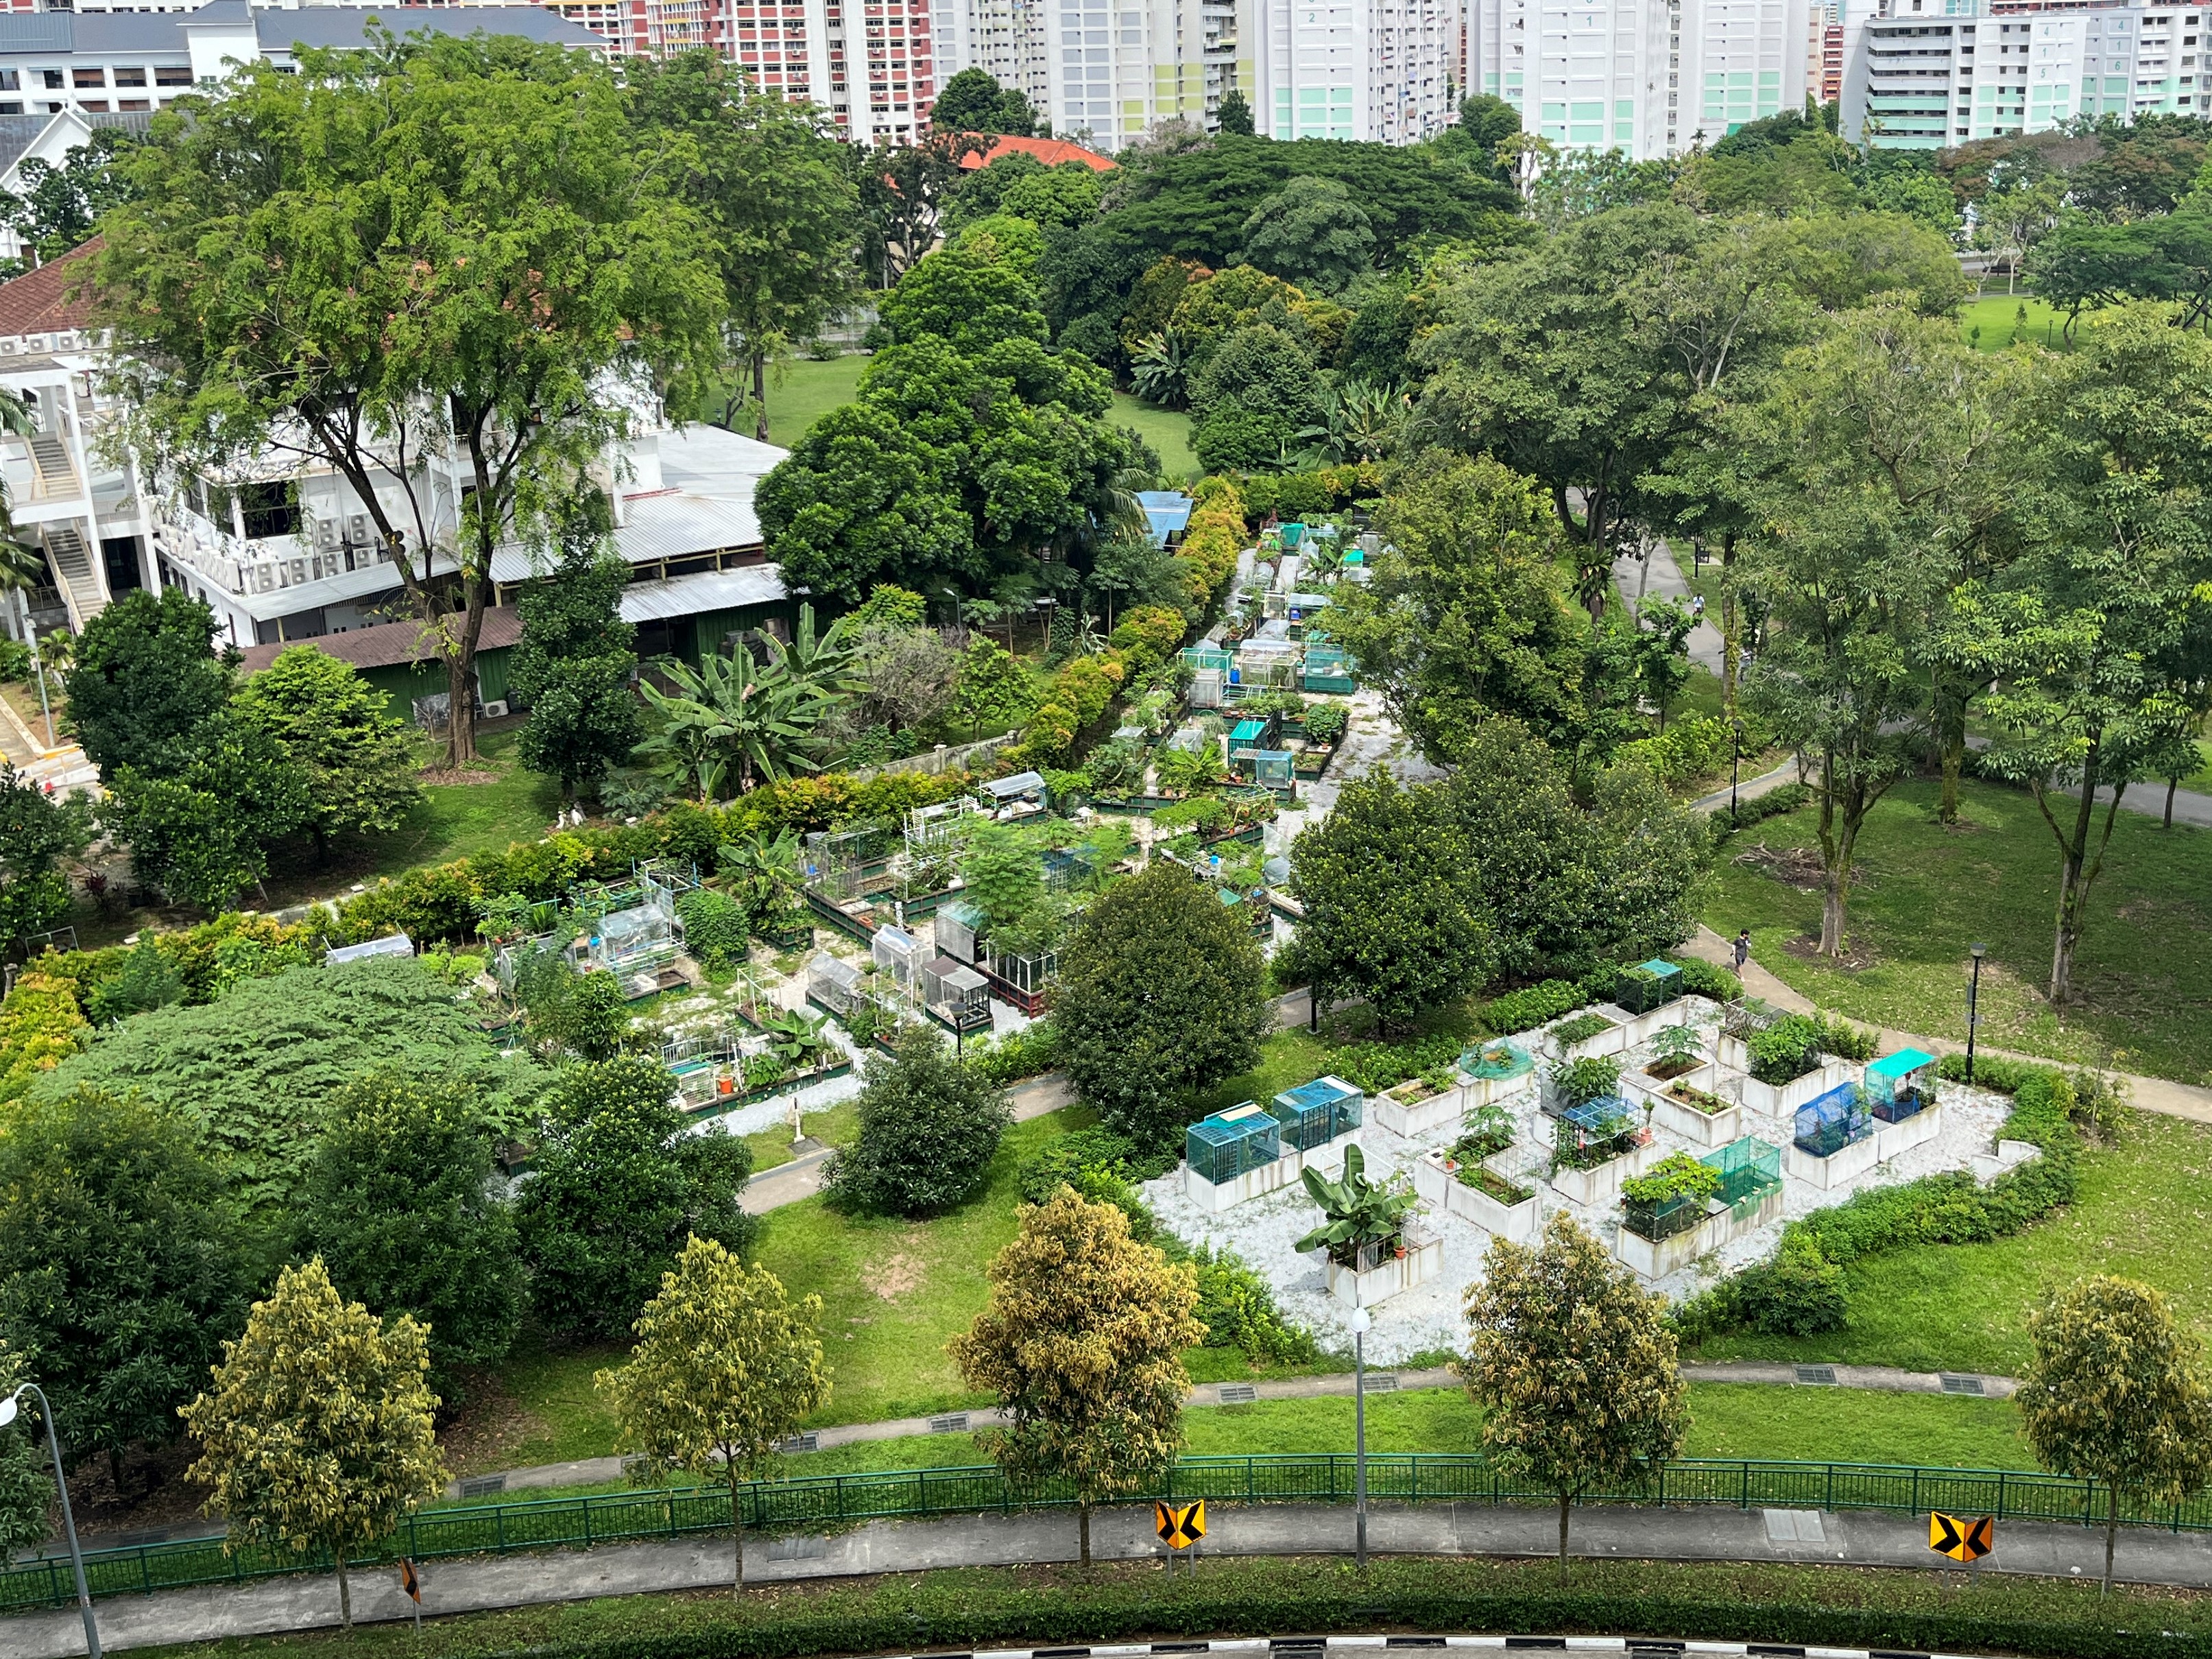 Gardening @ Punggol Park